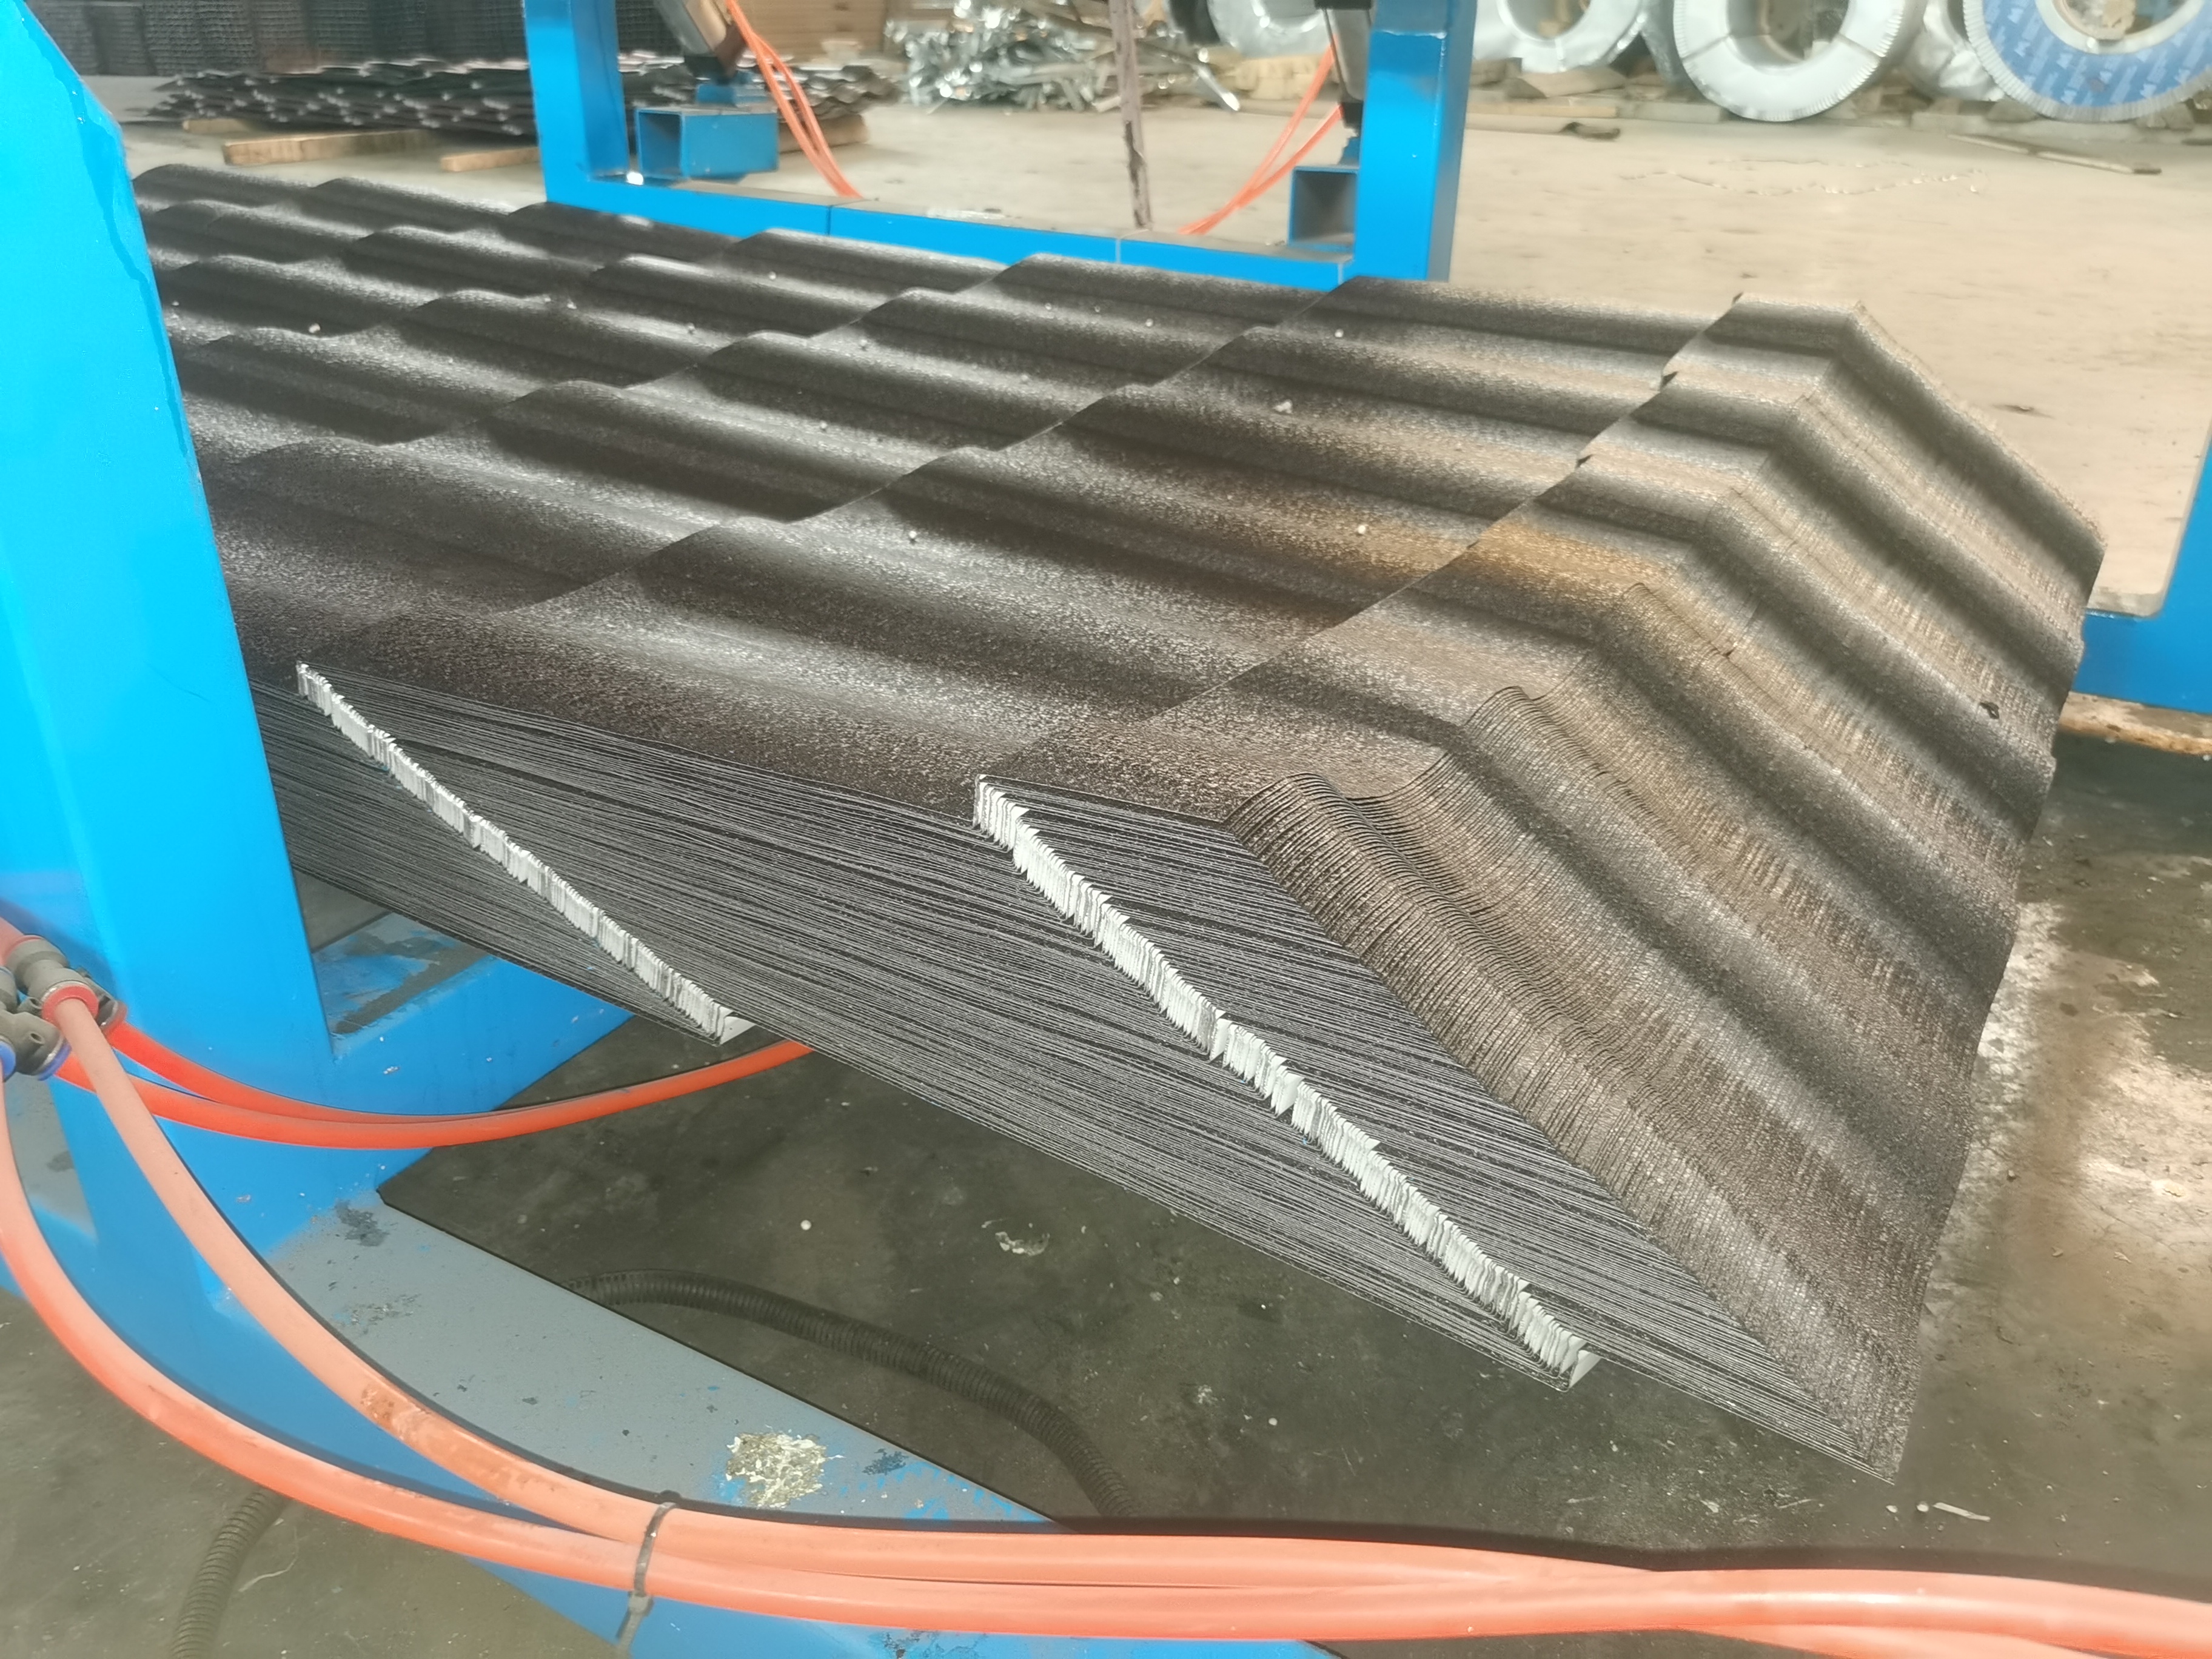 Azerbaijan popular adamante type roofing sheet making machine